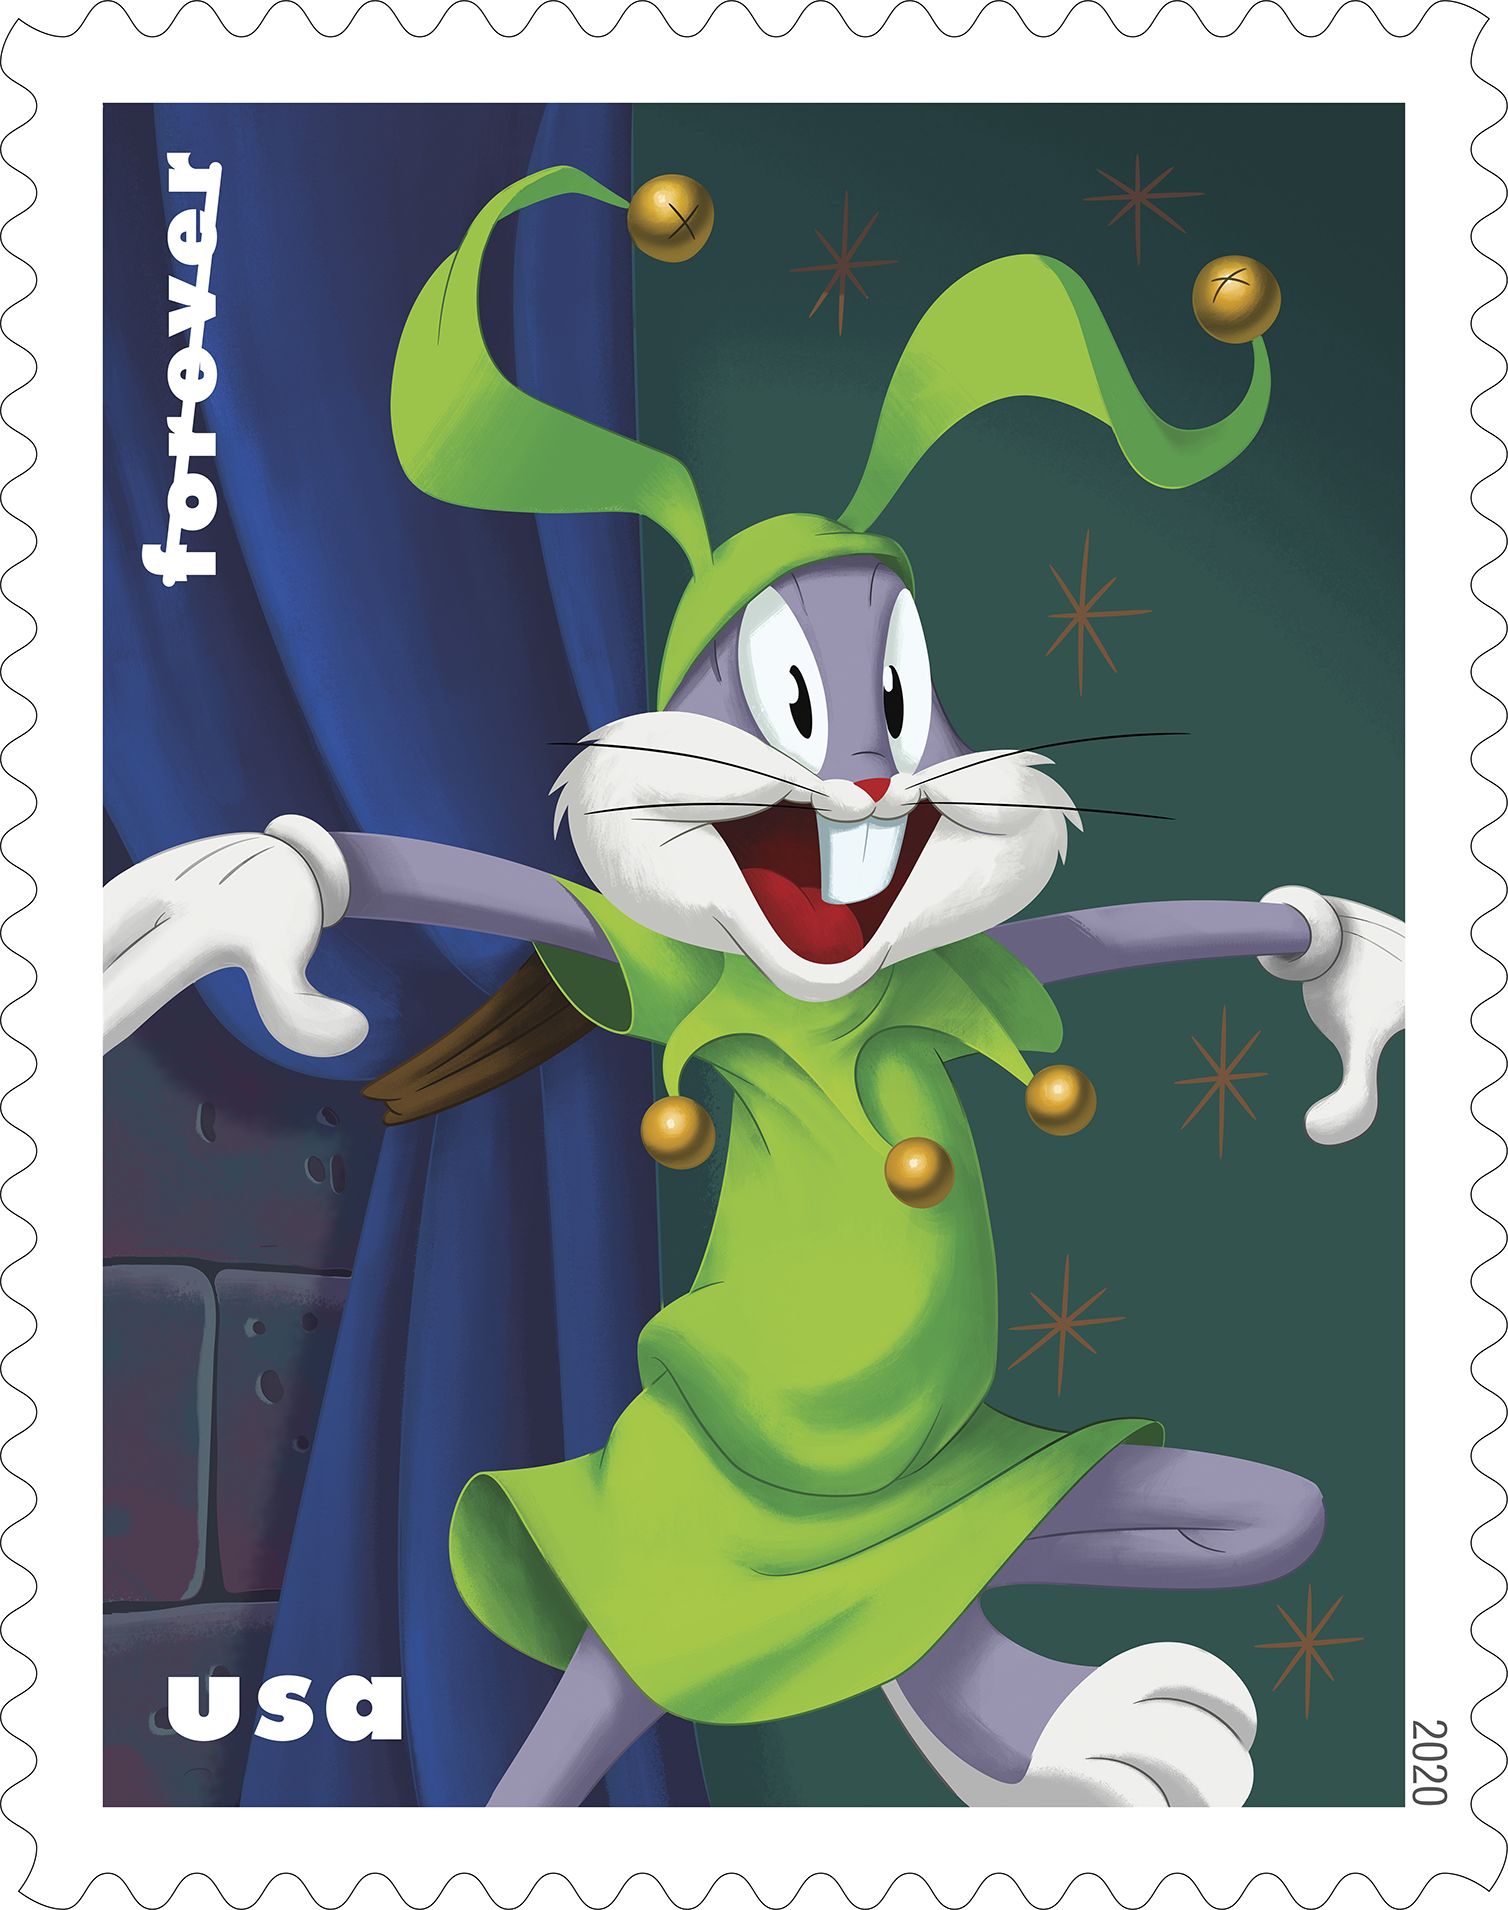 Bugs Bunny en una estampa se ve bromeando como un bufón con atuendo verde brillante y gorra graciosa. 